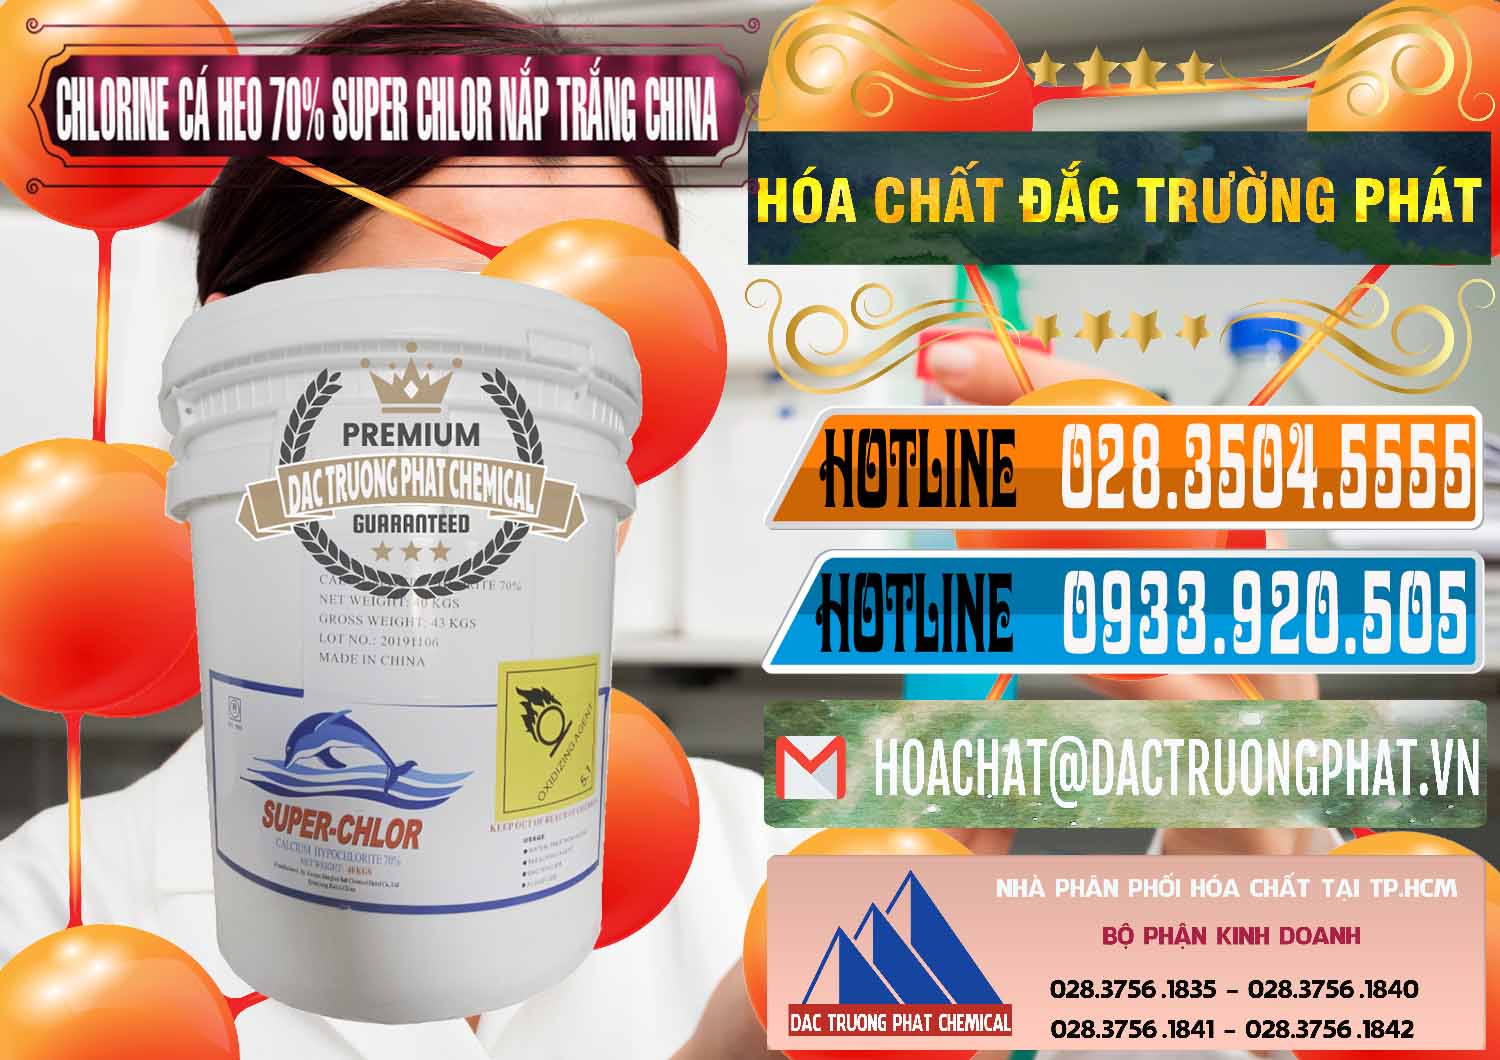 Đơn vị chuyên bán và cung cấp Clorin - Chlorine Cá Heo 70% Super Chlor Nắp Trắng Trung Quốc China - 0240 - Đơn vị chuyên bán ( cung cấp ) hóa chất tại TP.HCM - stmp.net